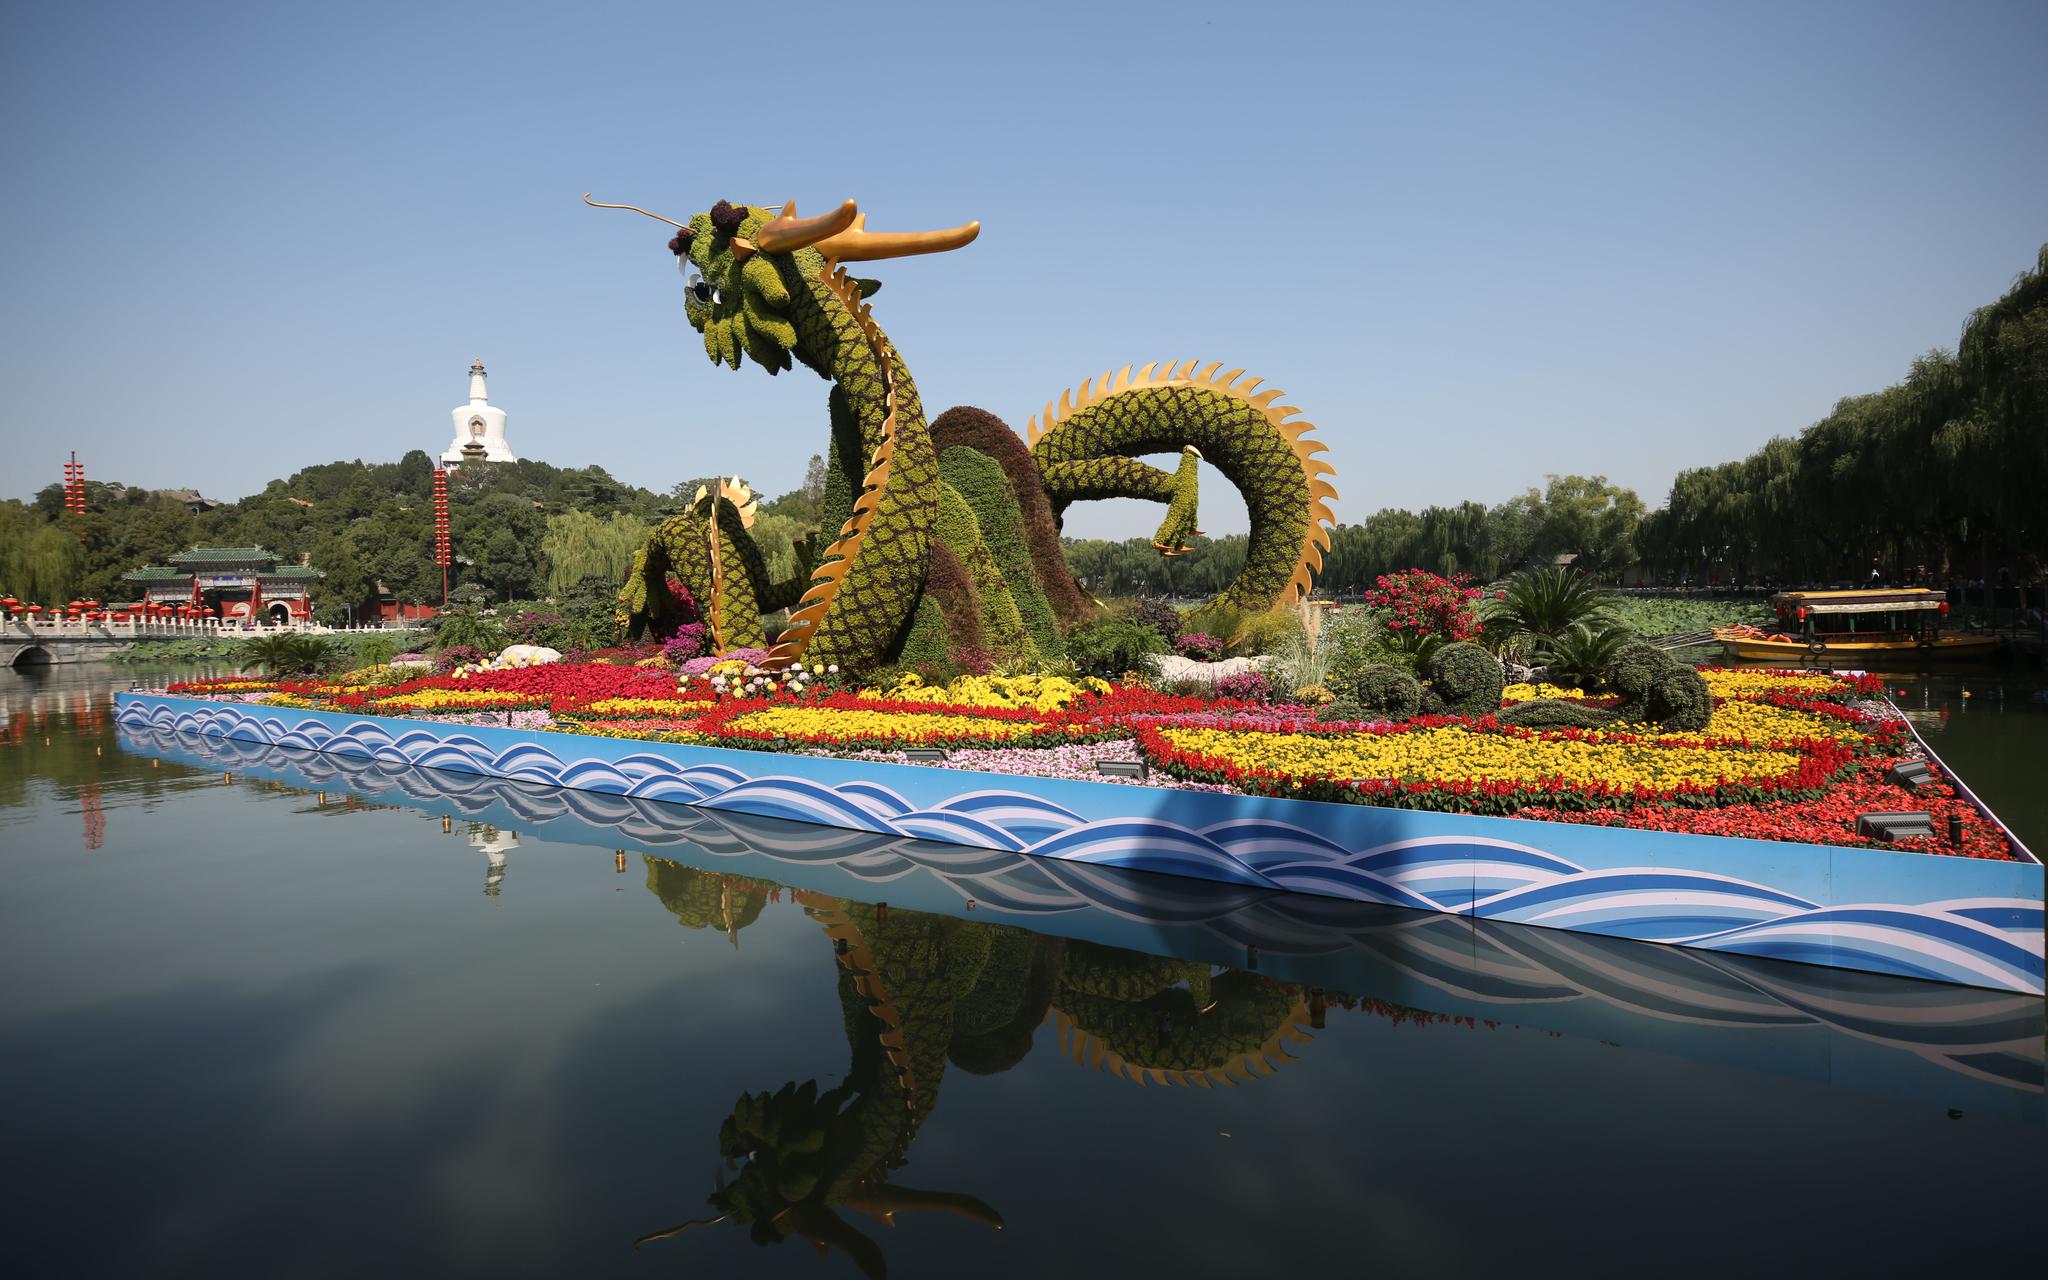 北海公园南门荷花湖的“龙腾盛世”主题花坛。北京市国庆游园指挥部 供图